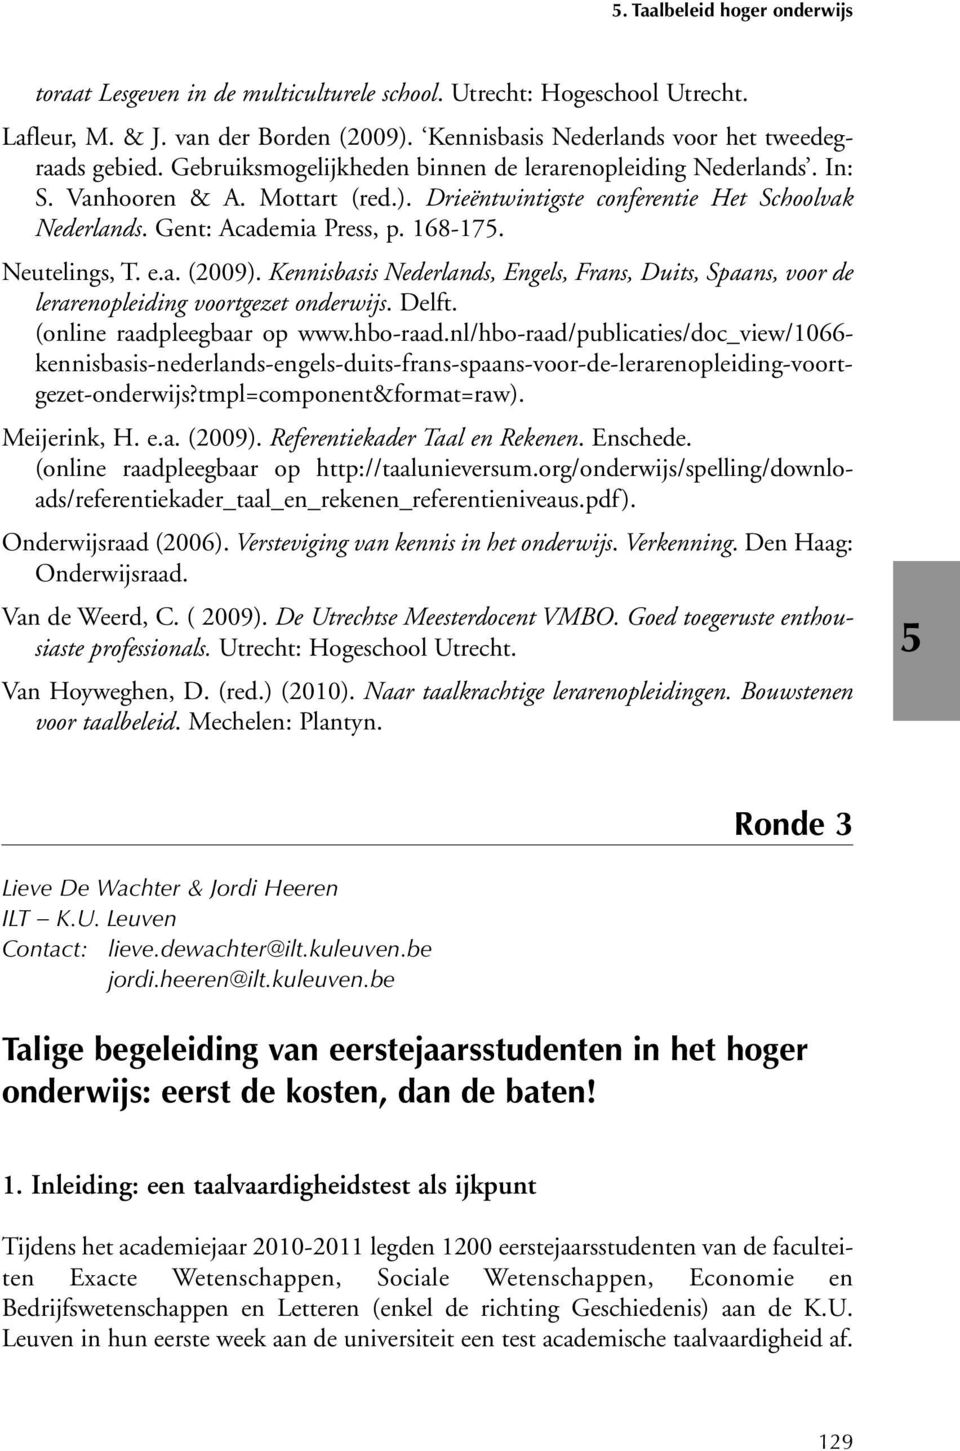 Neutelings, T. e.a. (2009). Kennisbasis Nederlands, Engels, Frans, Duits, Spaans, voor de lerarenopleiding voortgezet onderwijs. Delft. (online raadpleegbaar op www.hbo-raad.